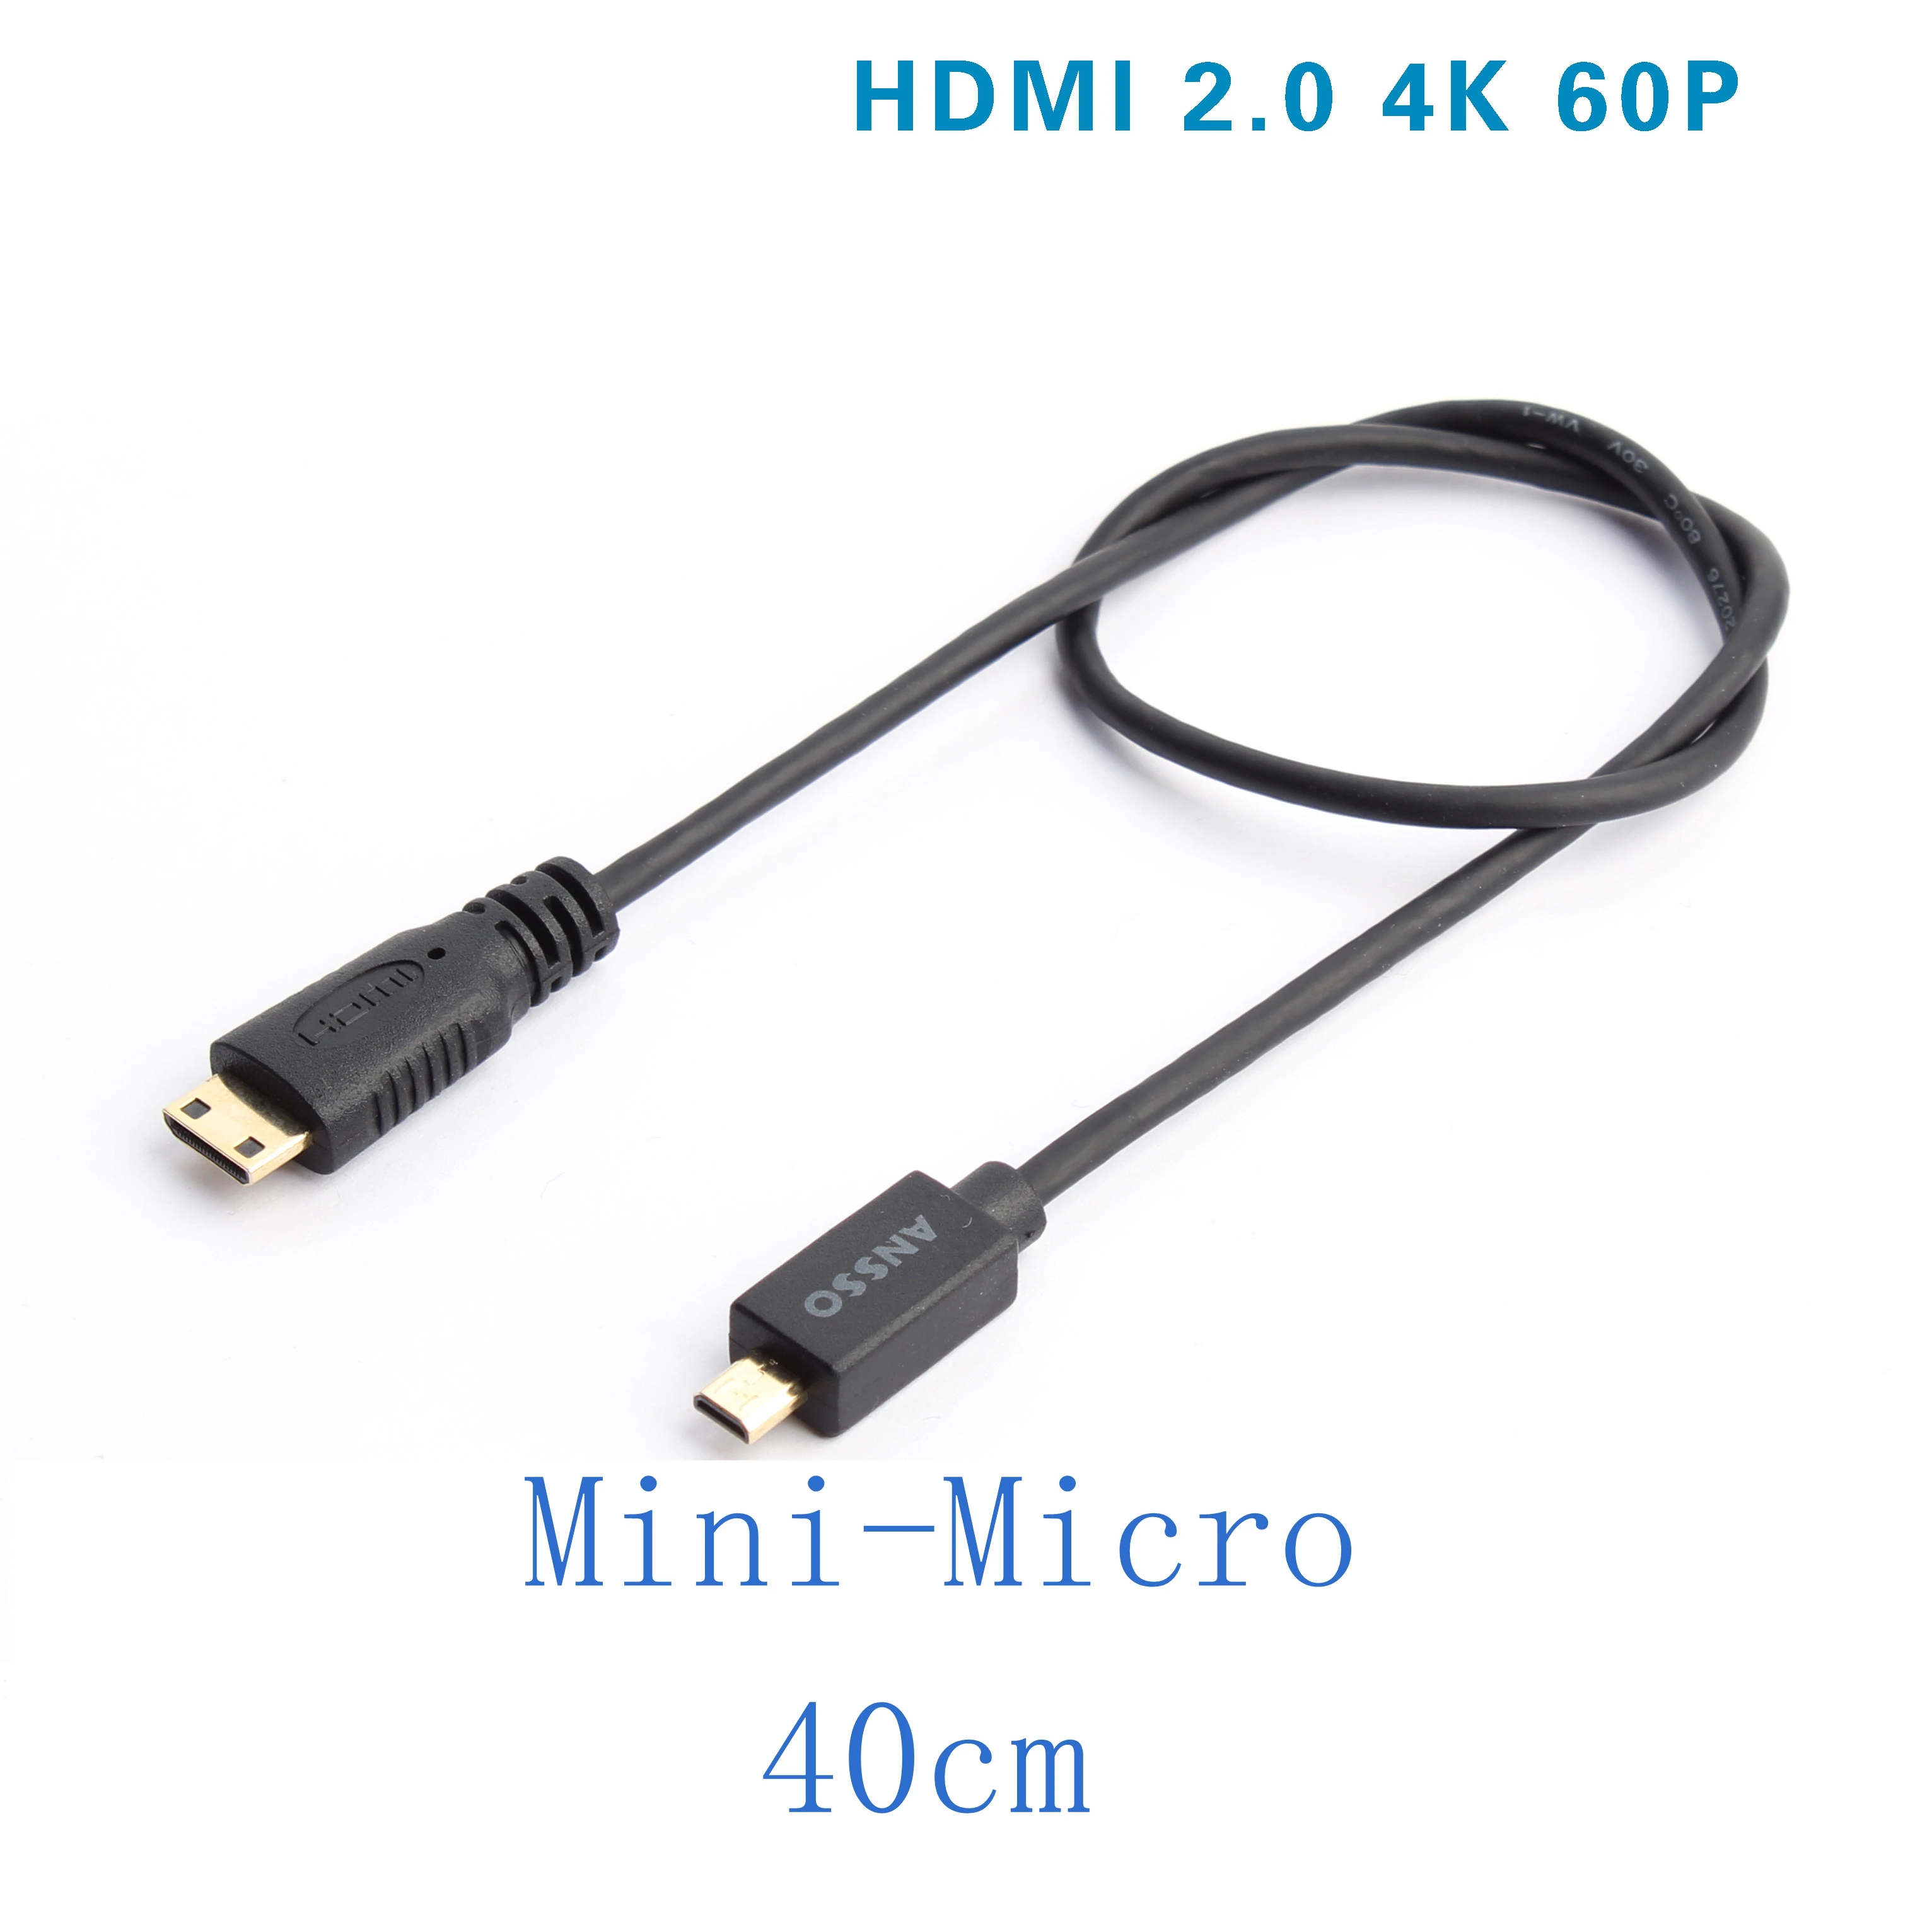 Mini Micro HDMI je združljiv Ultra Slim en stabilizator Zhiyun DJI slike prenos Mini Micro ultra-short tanek kabel 4K60P